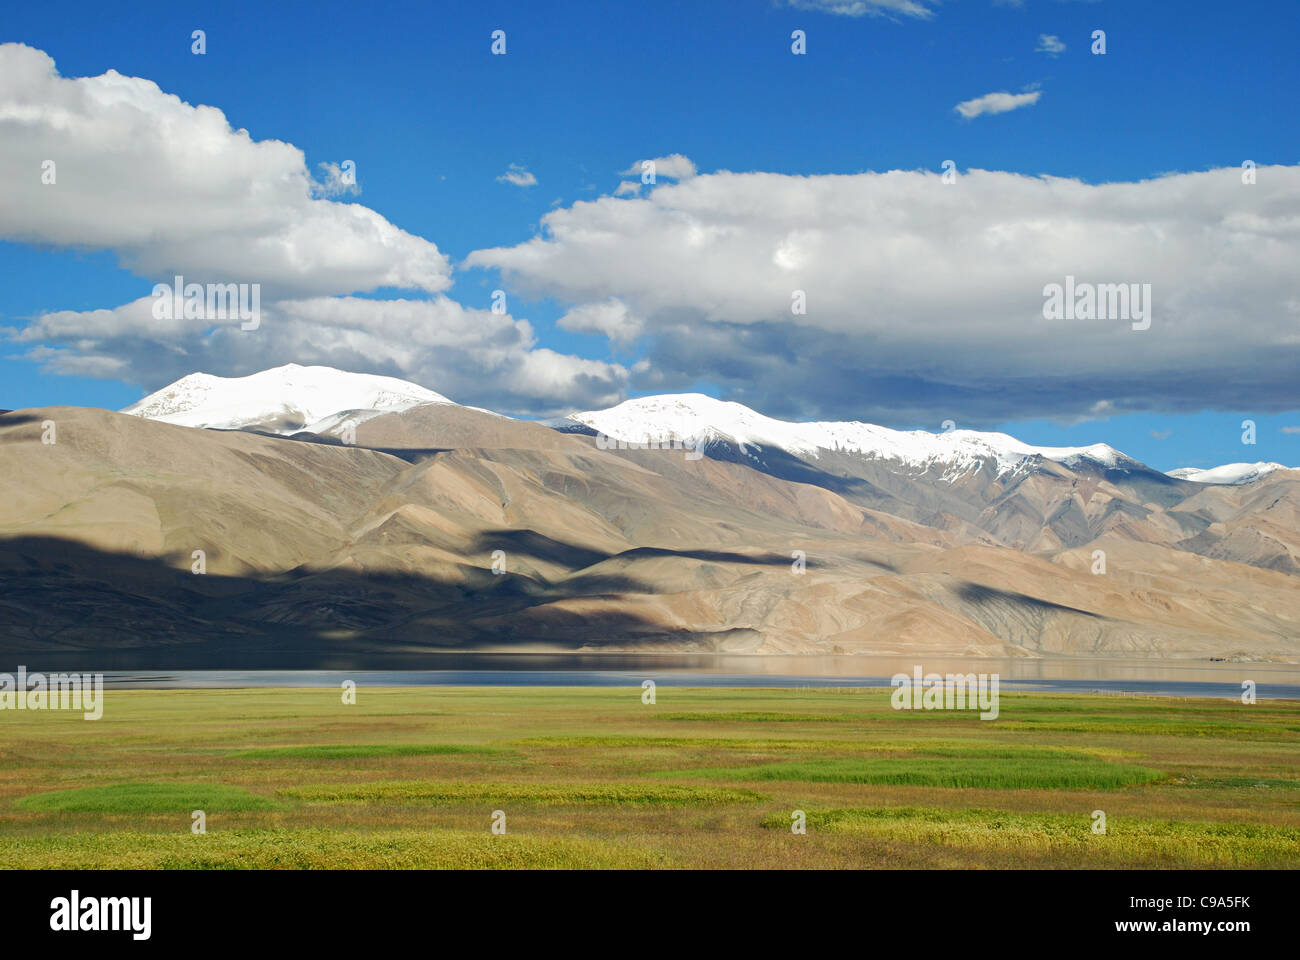 Rivestito di neve montagna himalayana varia in background di Tsomoriri o lago Moriri, enormi nuvole bianche sopra la montagna, Green f Foto Stock